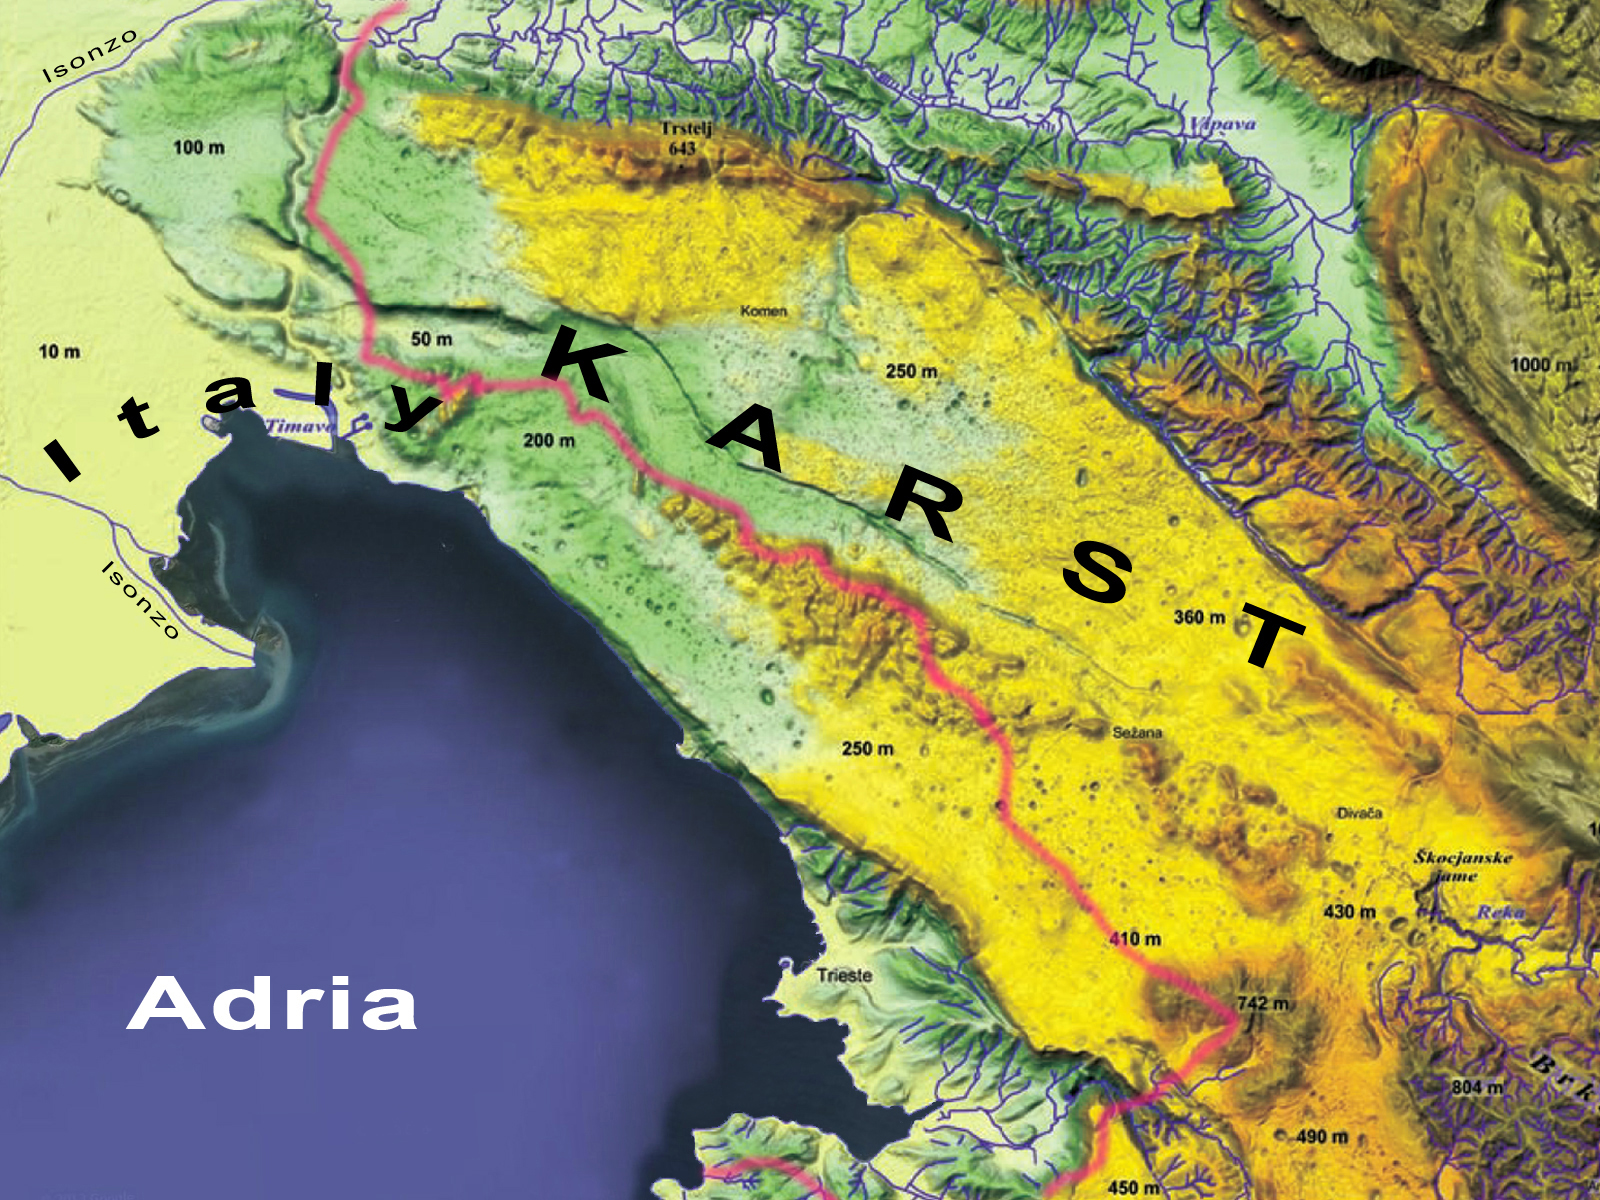 https://en.wikipedia.org/wiki/Karst_Plateau_(Italy-Slovenia)#/media/File:Type-locality_Karst-mountains_Slovenia.jpg